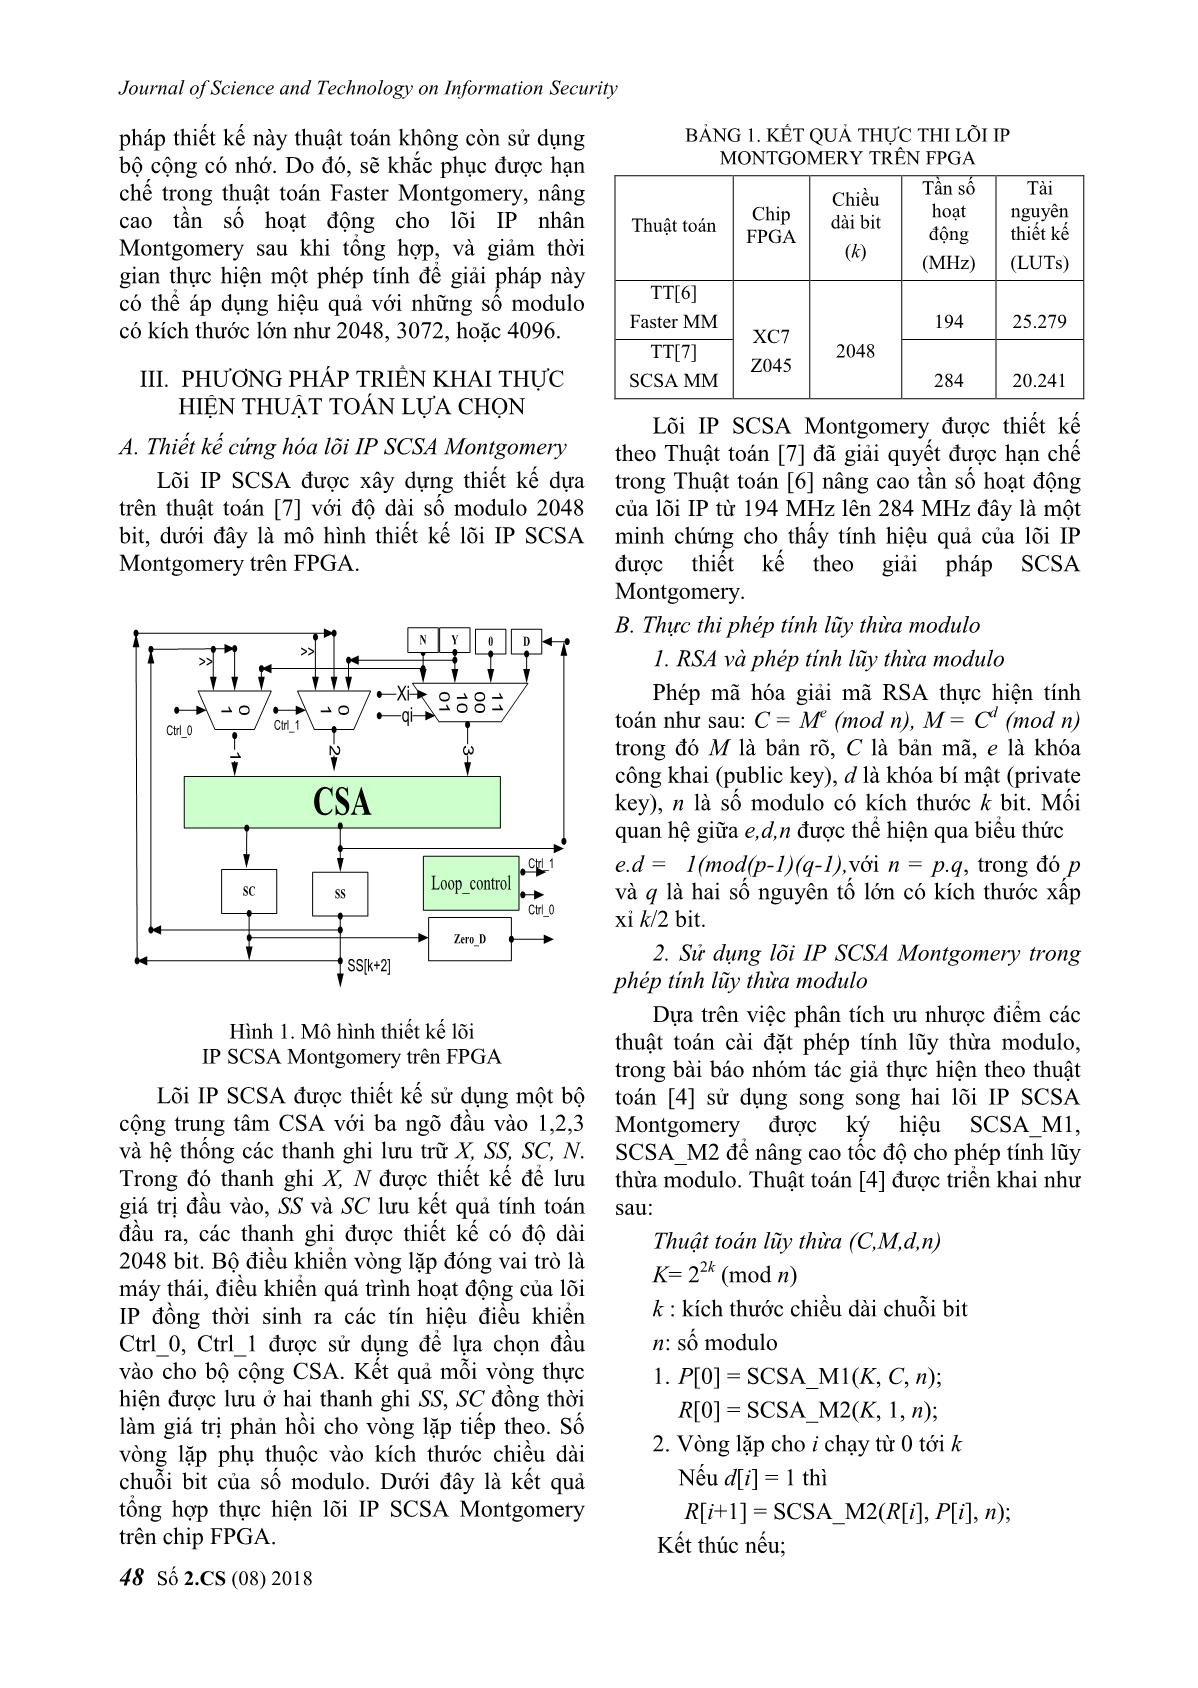 Về một giải pháp cứng hóa phép tính lũy thừa modulo trang 4